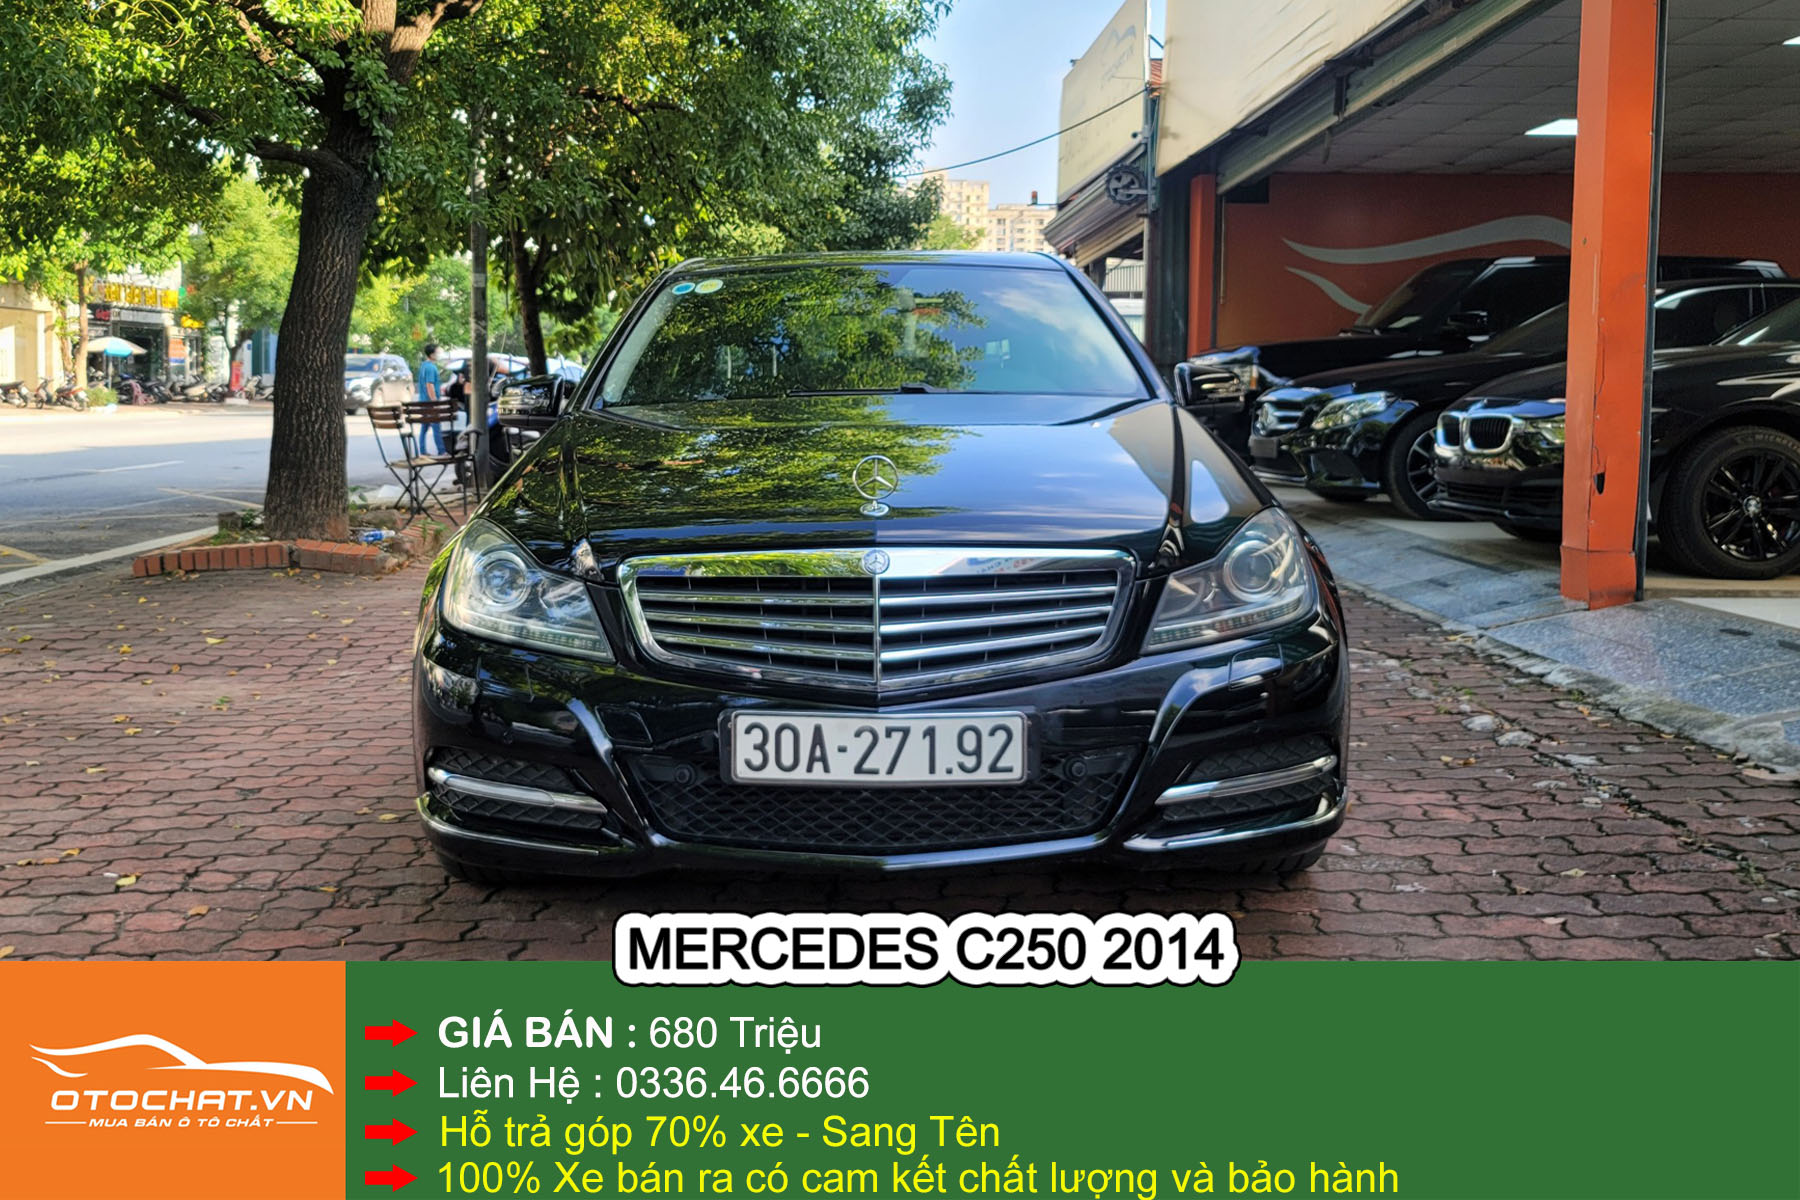 Mercedes C250 2014